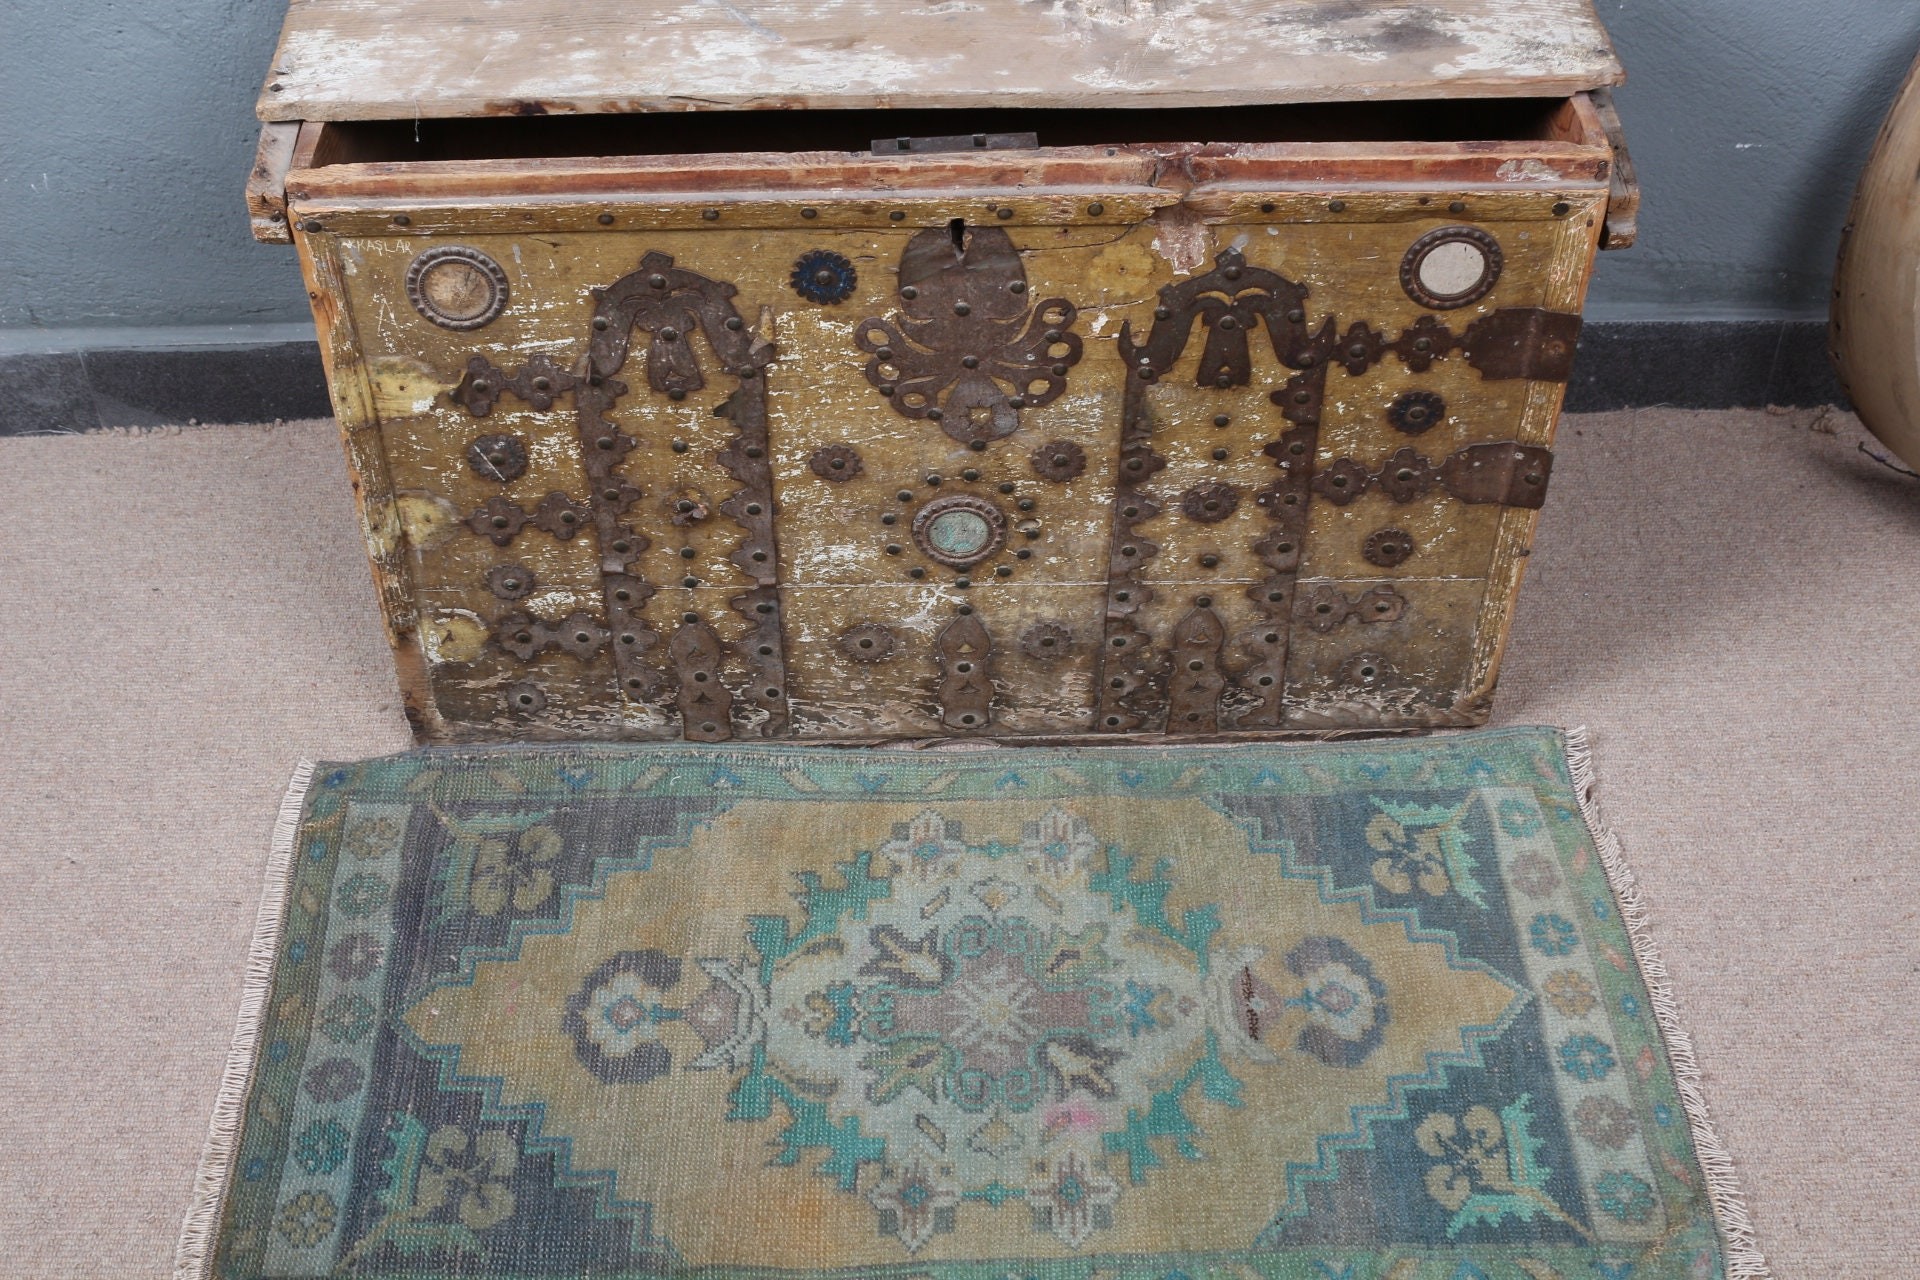 Türk Halıları, 1.6x3.1 ft Küçük Halı, Banyo Halısı, Antika Halılar, Fas Halıları, Vintage Halı, Mutfak Halısı, Yeşil Antika Halı, Mutfak Halıları